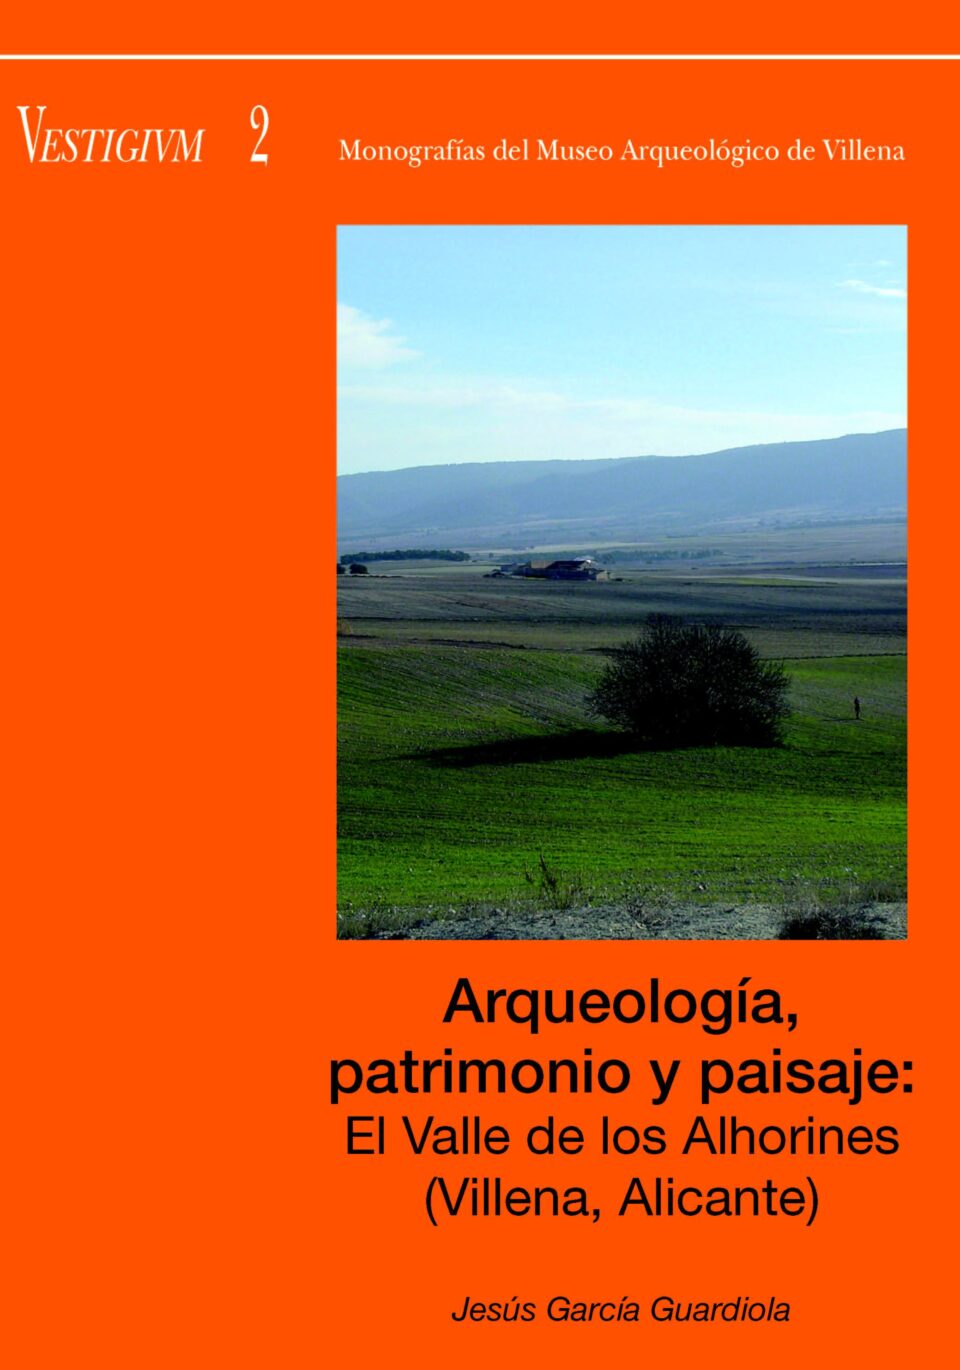 Presentación del libro Arqueología